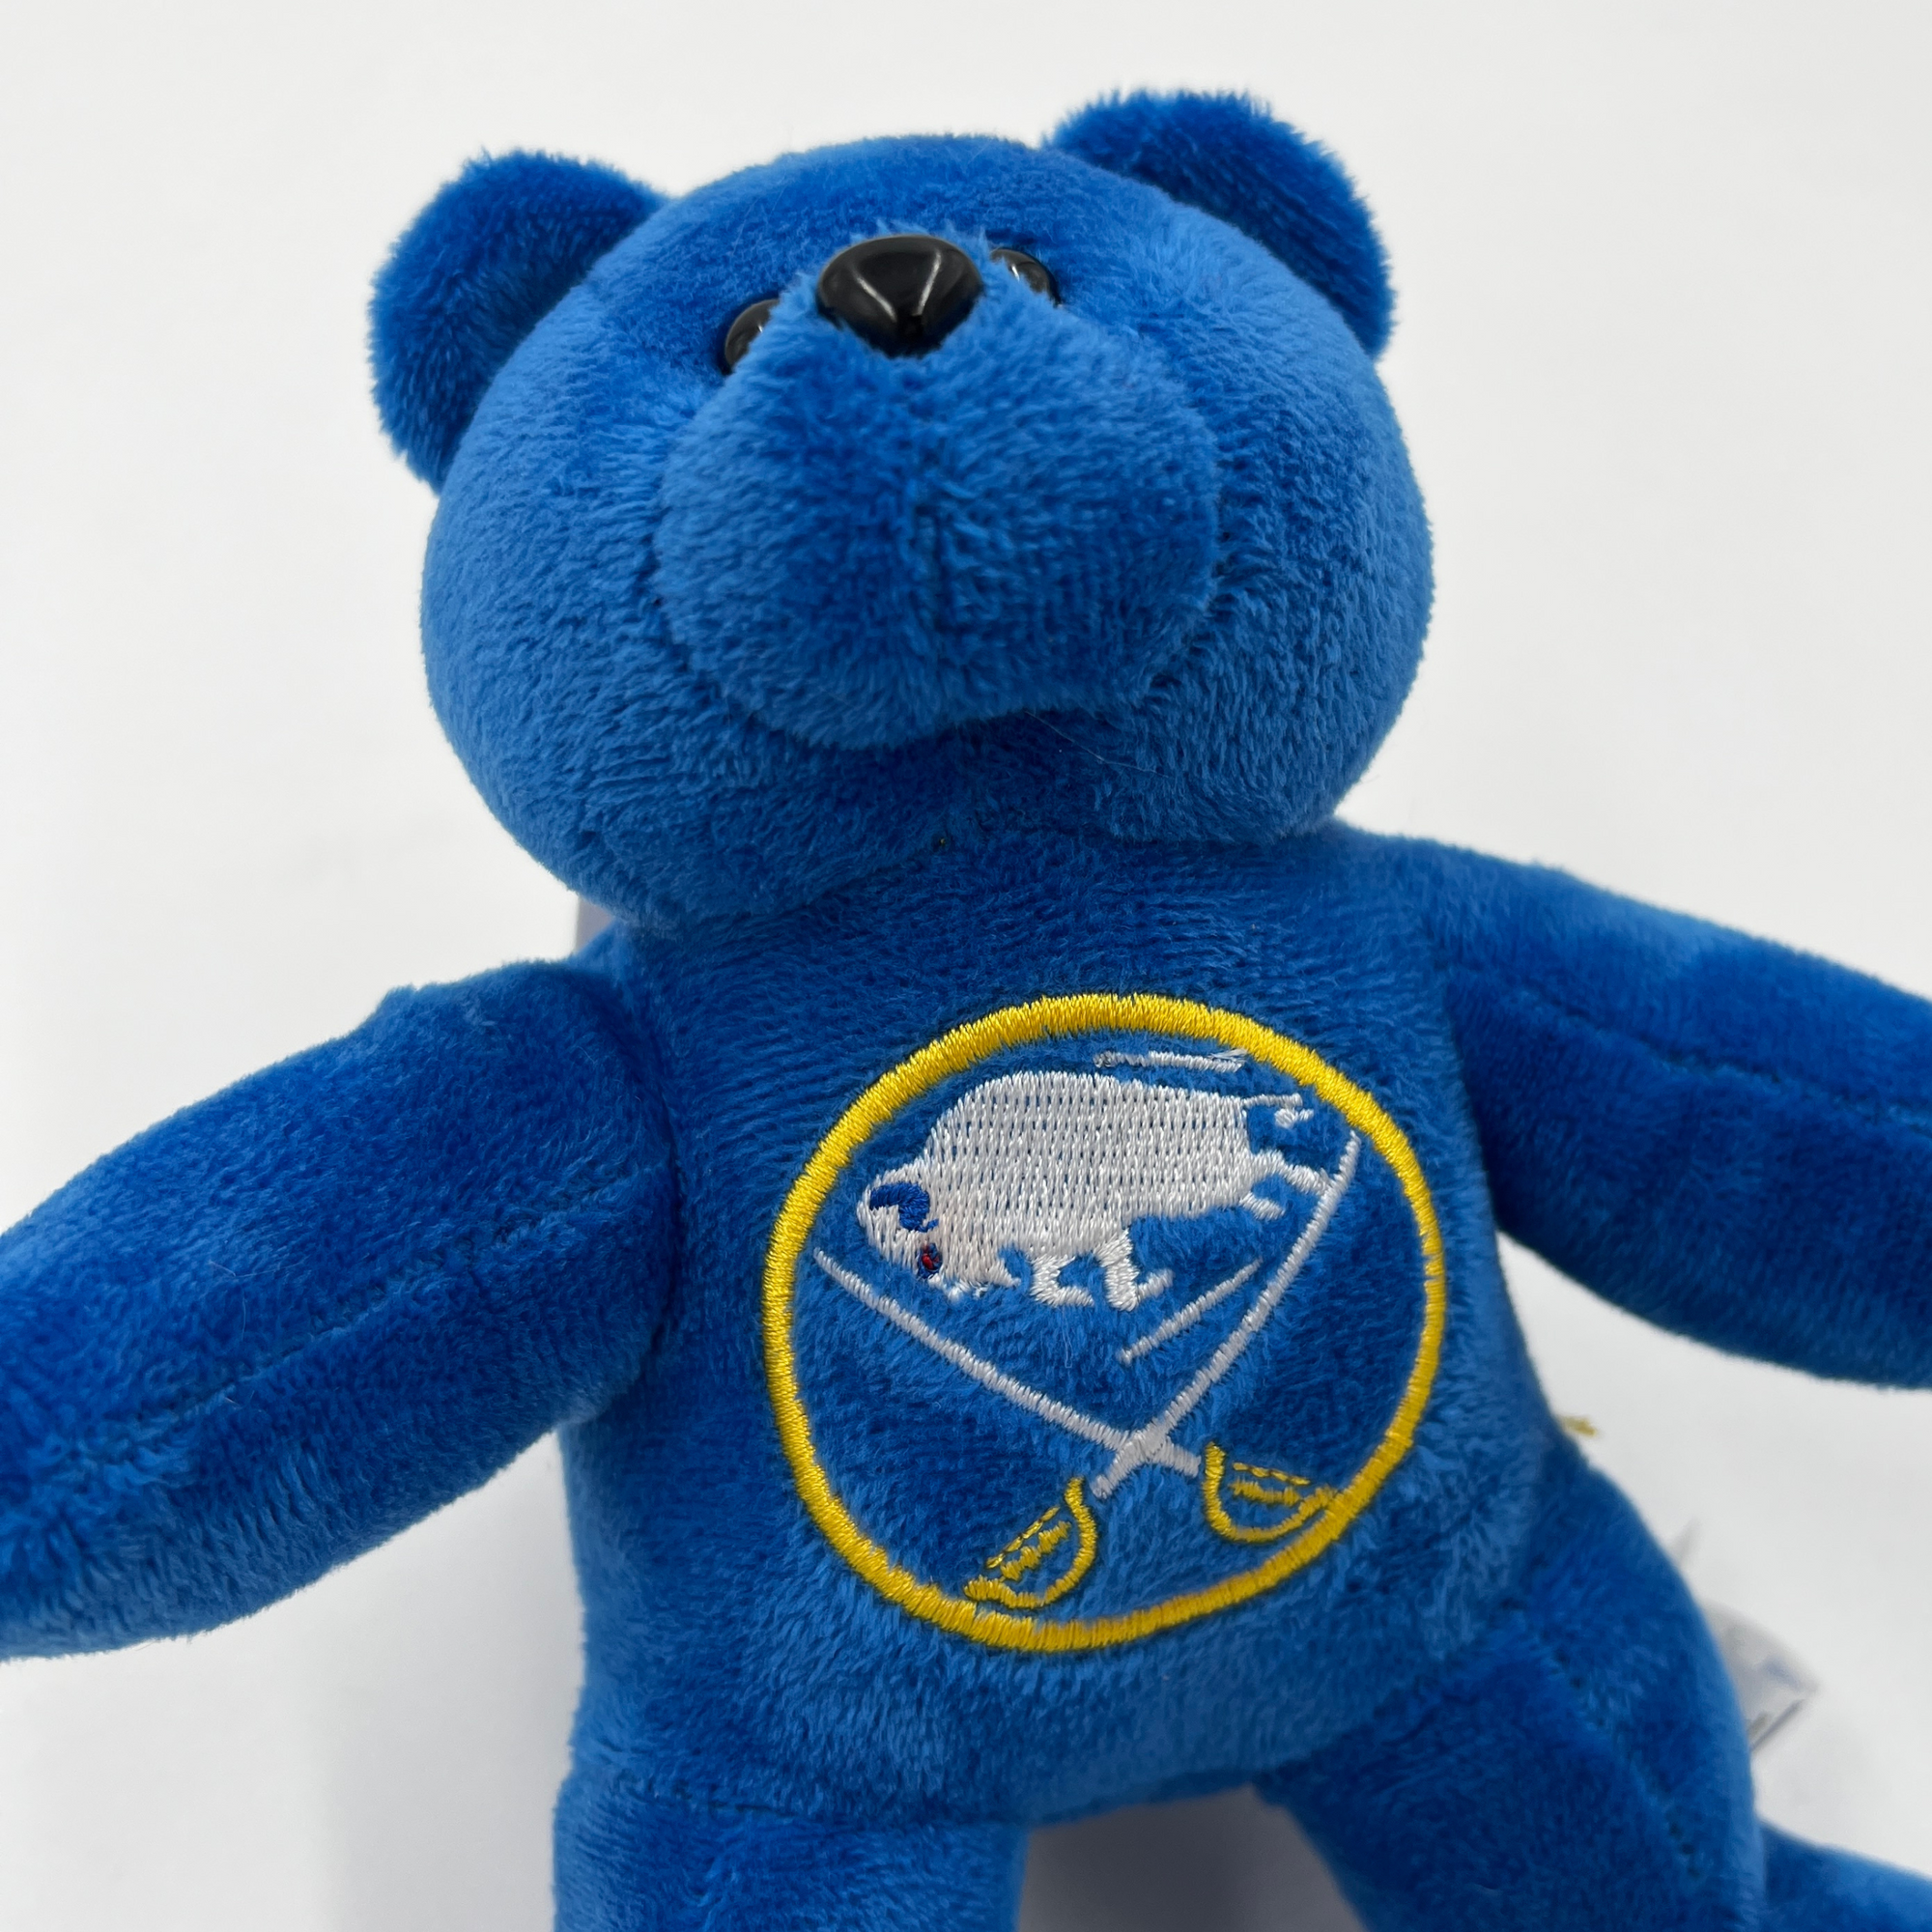 Buffalo Sabres Royal Blue Stuffed Bear